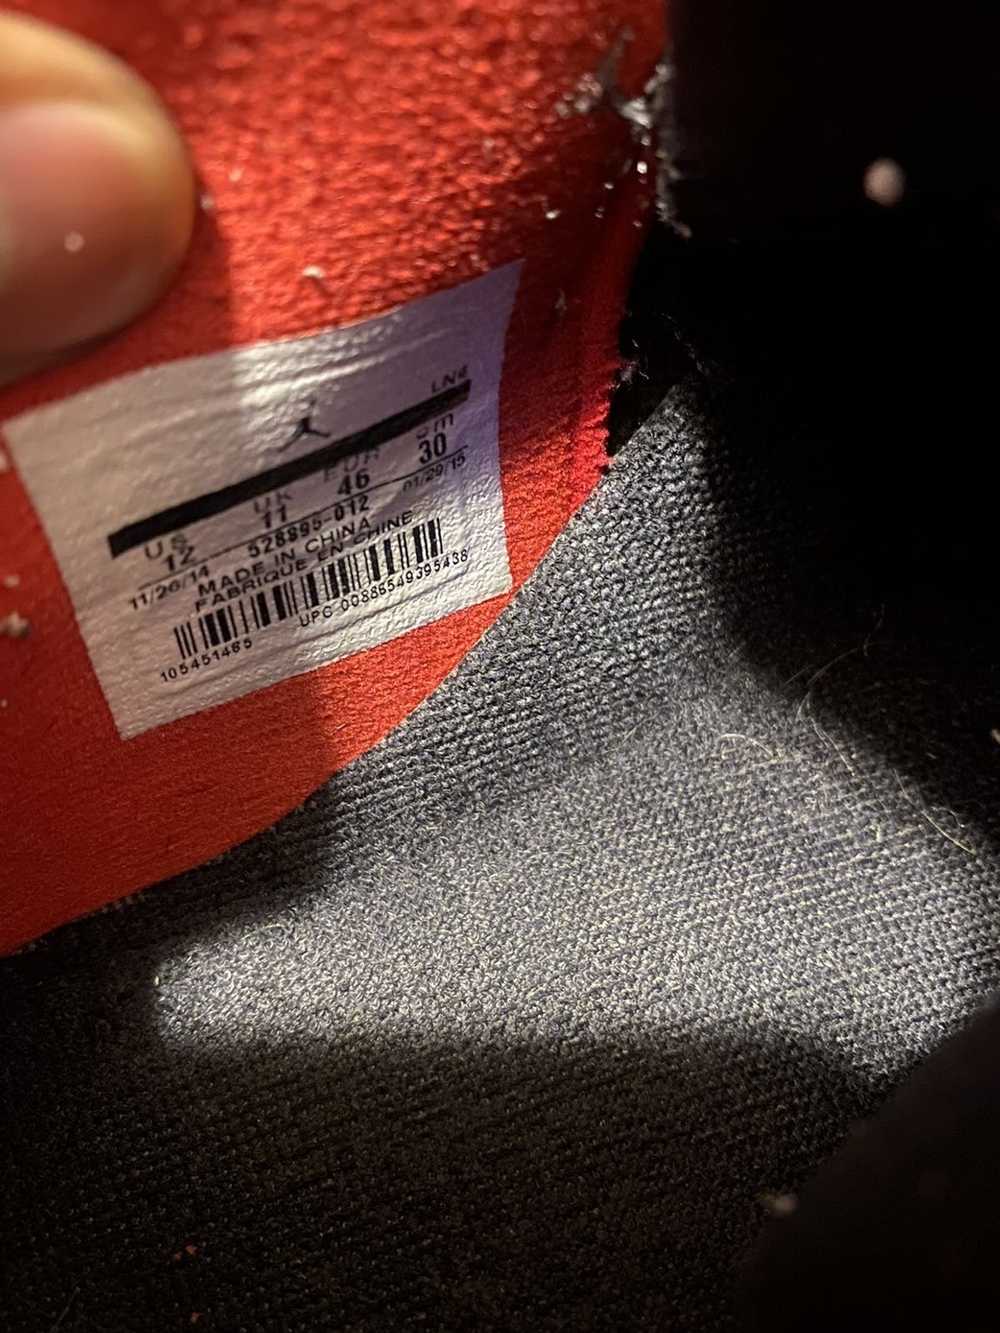 Jordan Brand × Nike Jordan Bred 11 Lows - image 4